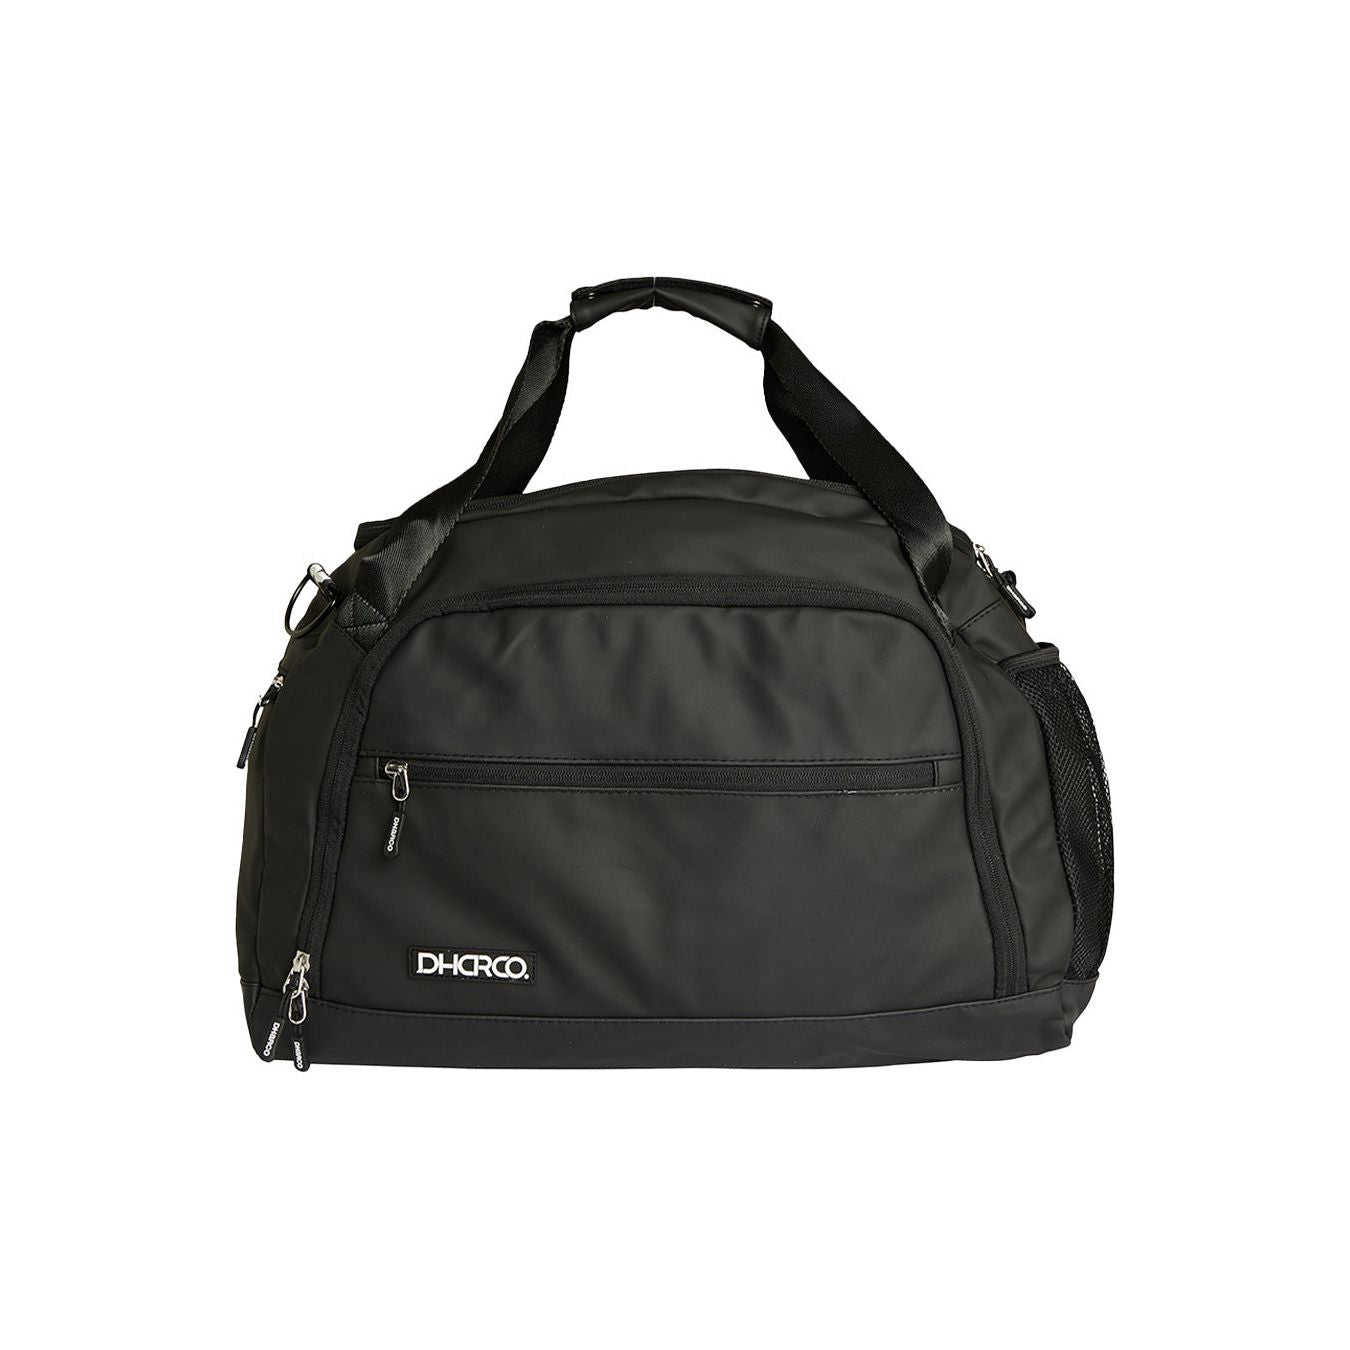 DHaRCO 30L Duffle Bag - Black